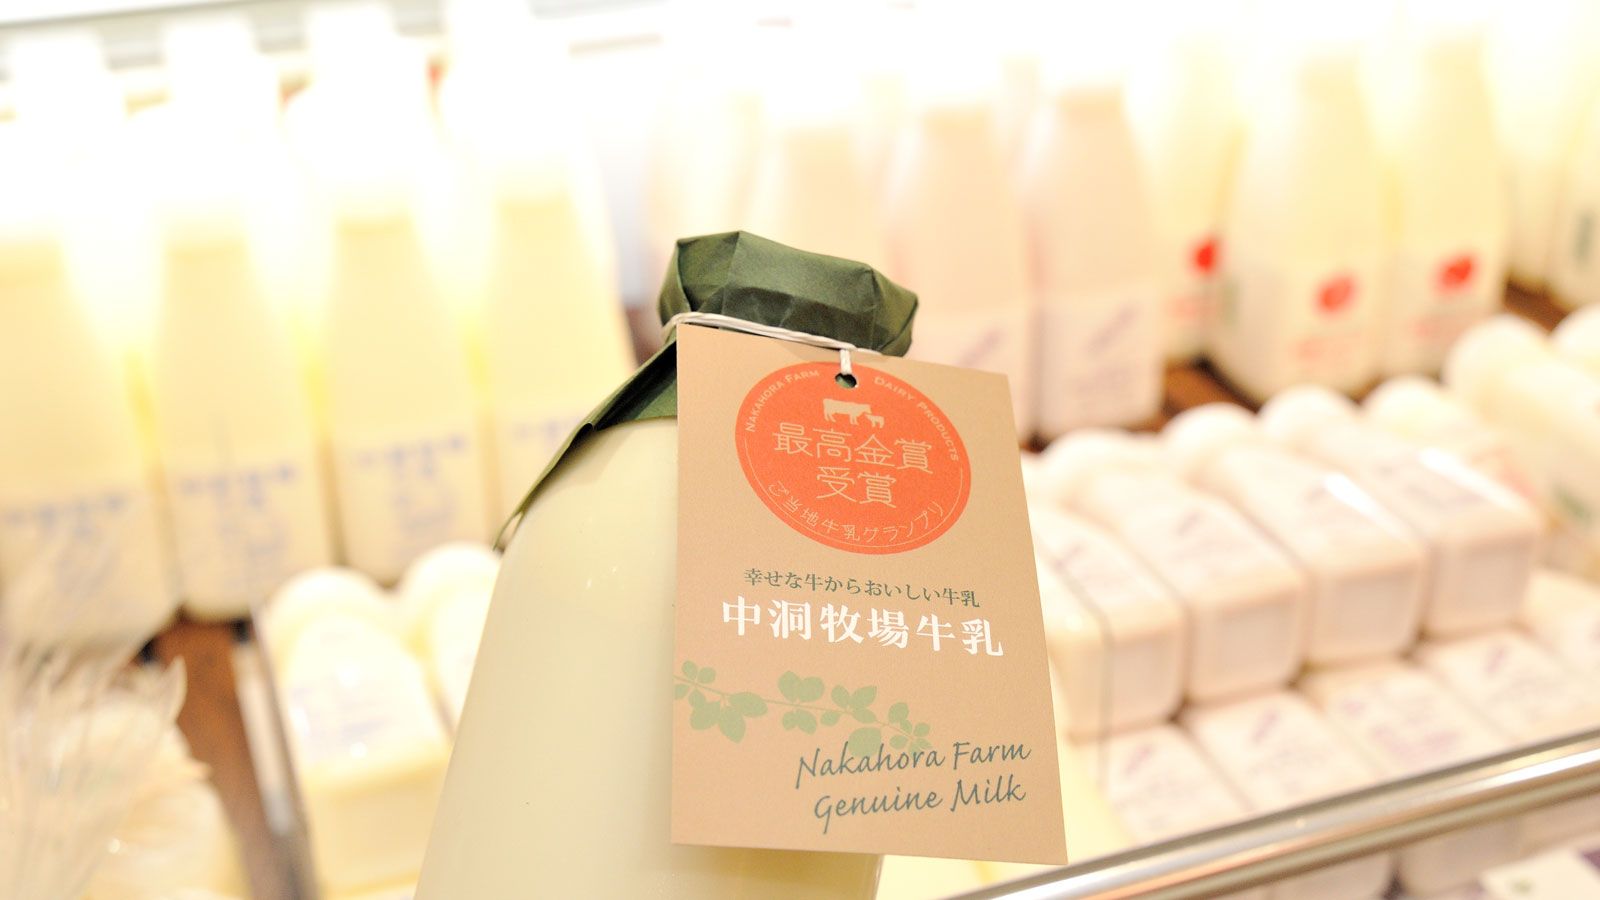 絶品 1本1100円の牛乳 は牛の幸福度が違う 食品 東洋経済オンライン 経済ニュースの新基準